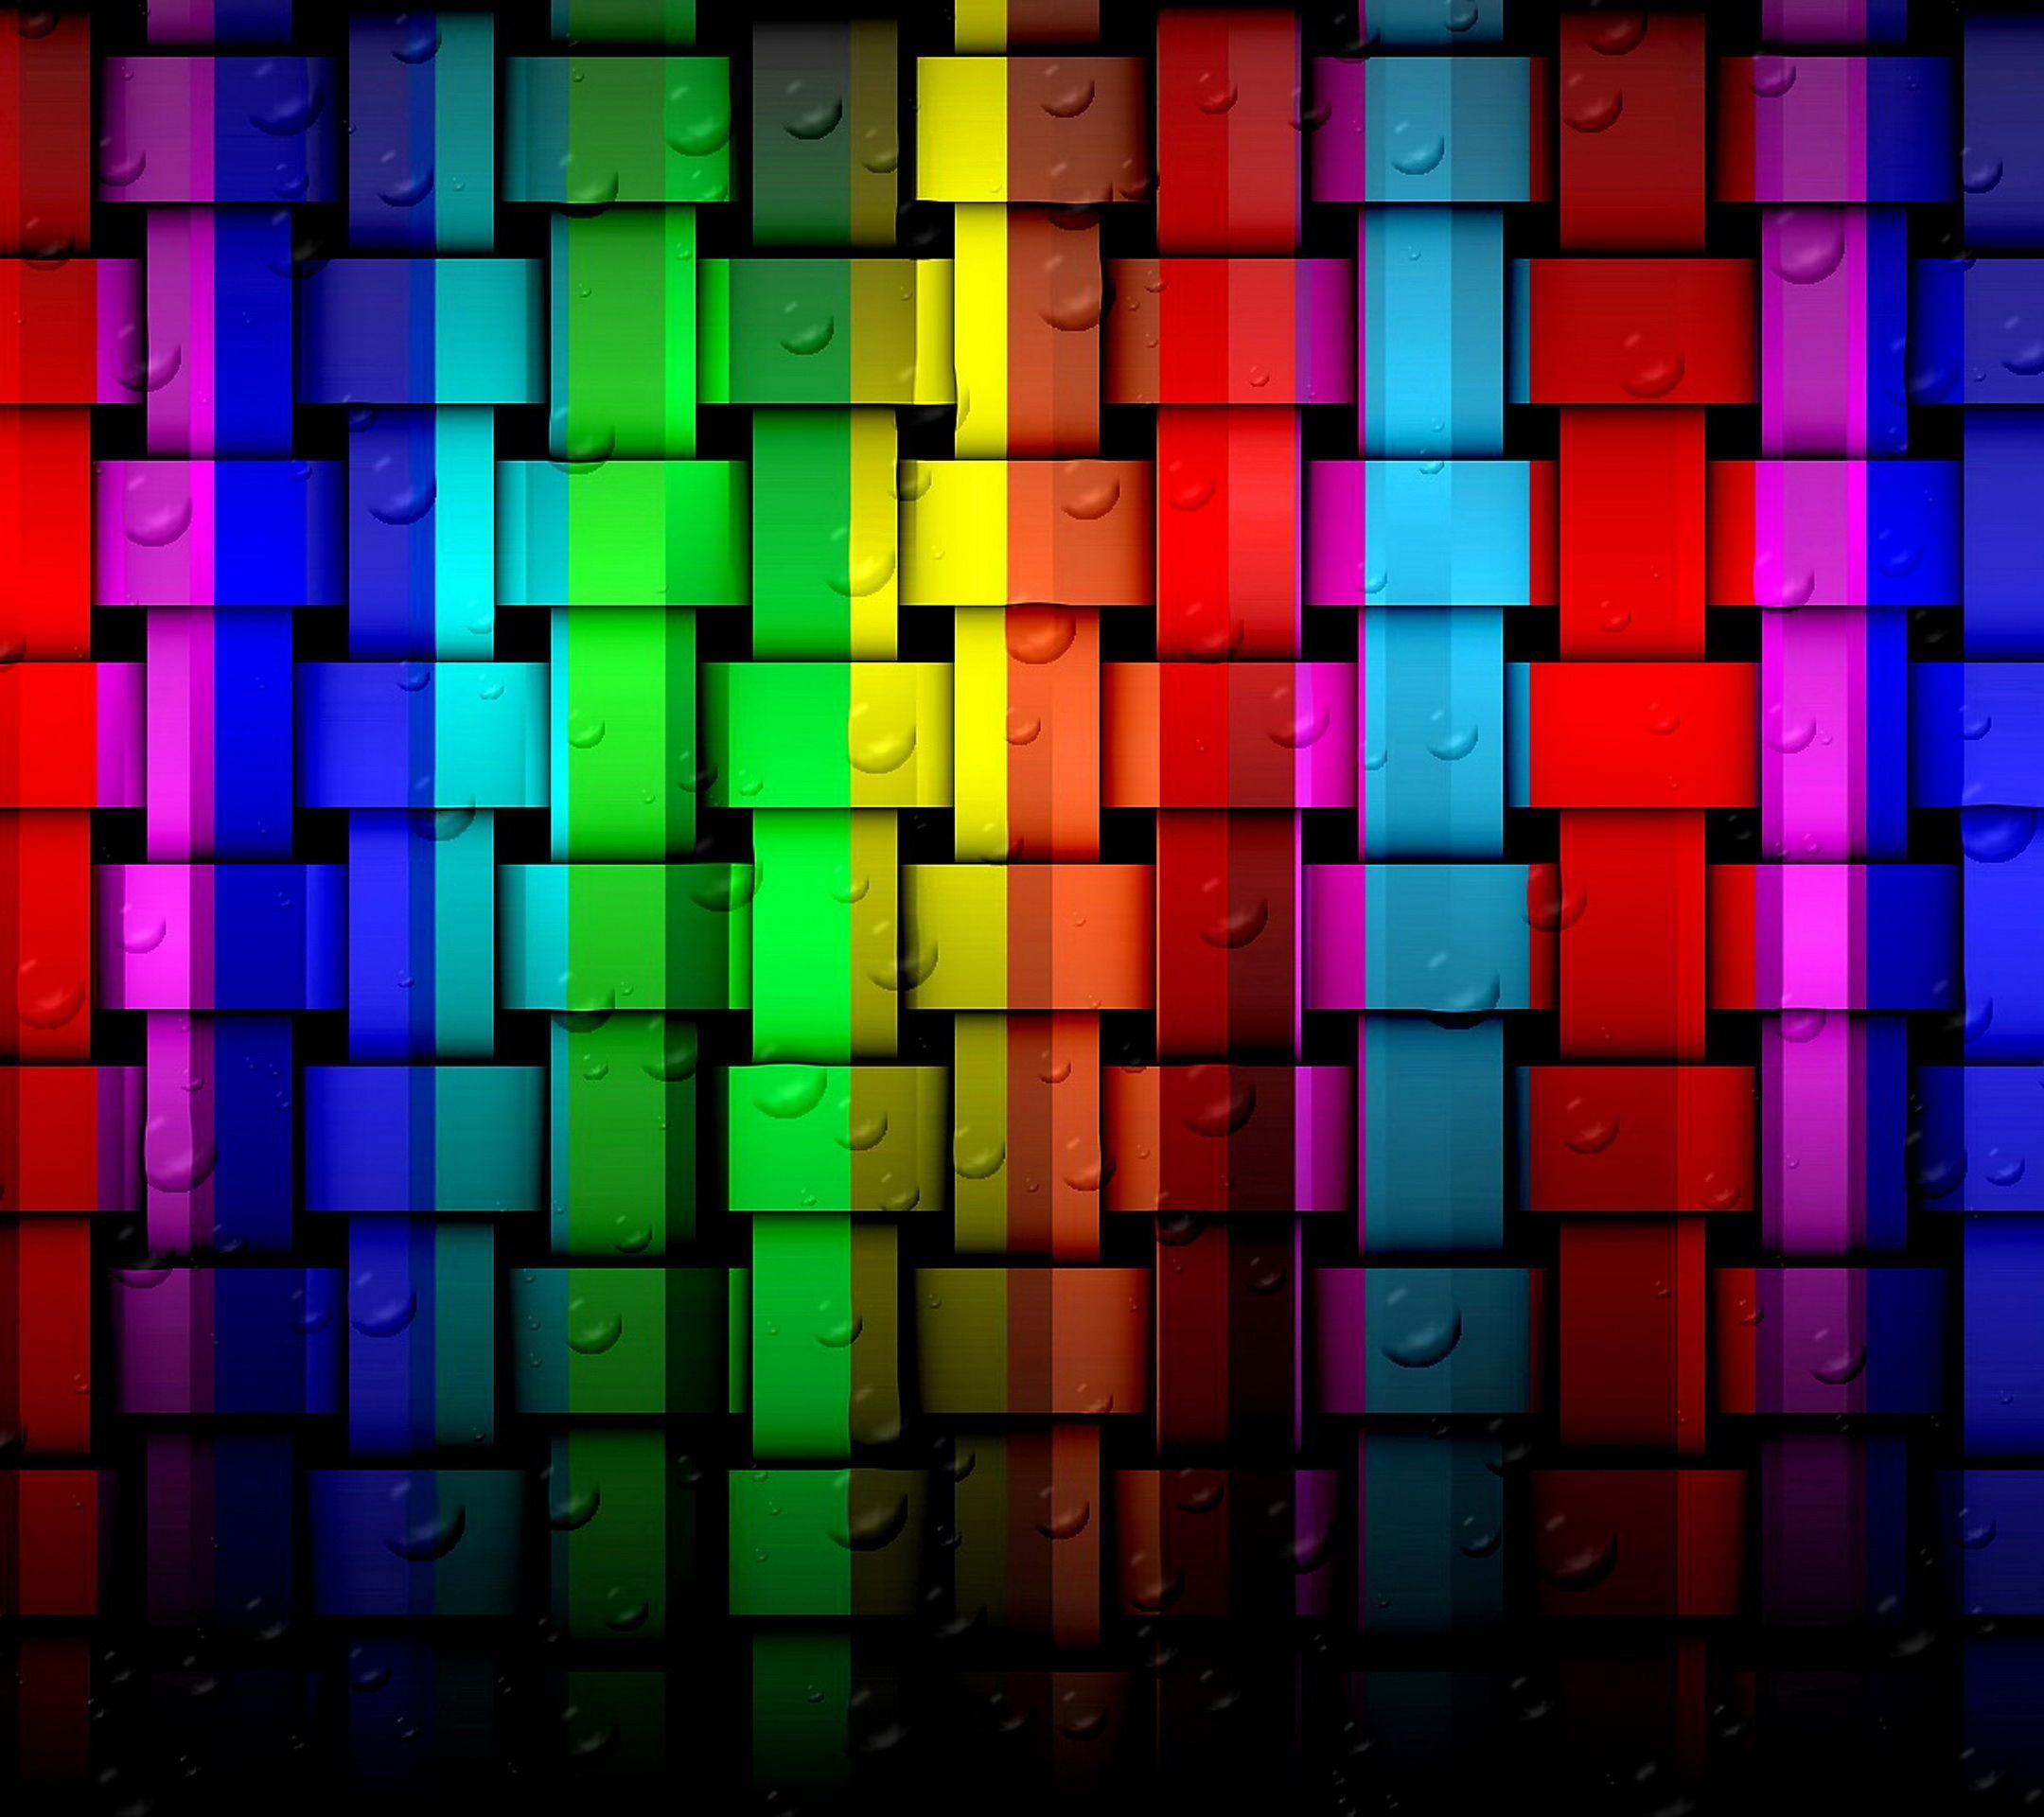 2160x1920 Galaxy Note 3 Color Wallpaper HD - Hình nền đẹp tuyệt vời.  Hình nền đầy màu sắc, Hình nền tuyệt đẹp, Hình nền Xperia